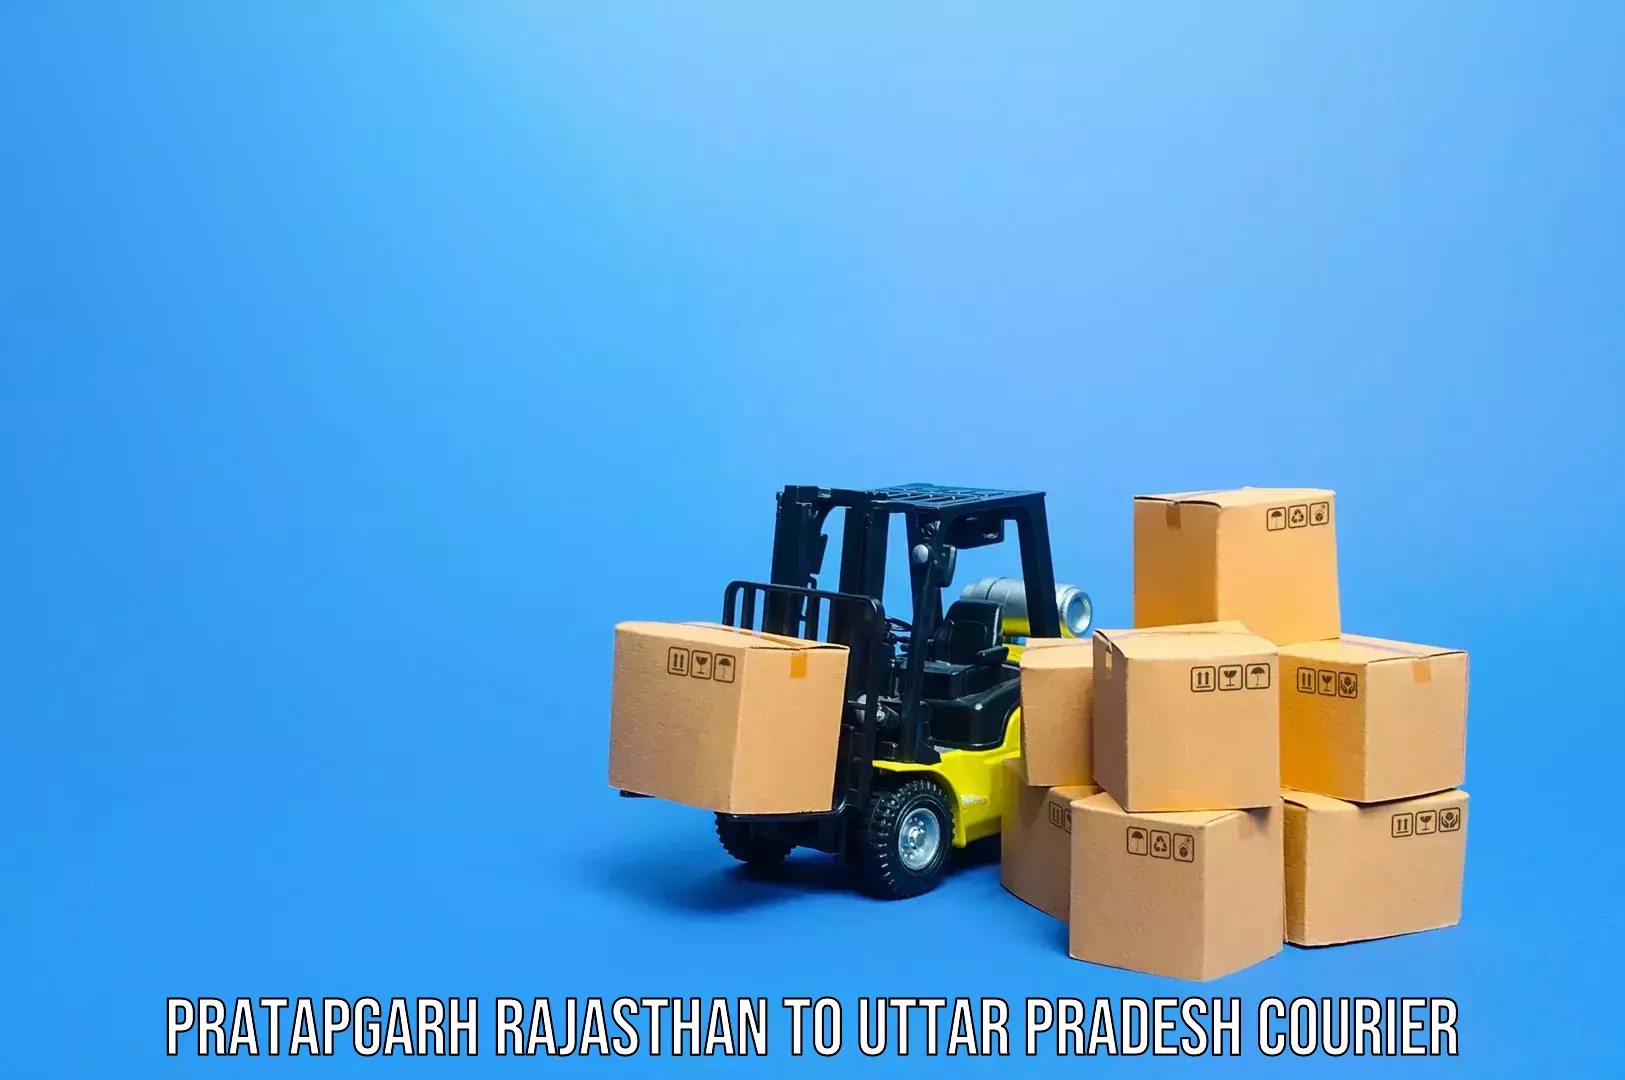 Luggage transport solutions Pratapgarh Rajasthan to Sant Ravidas Nagar